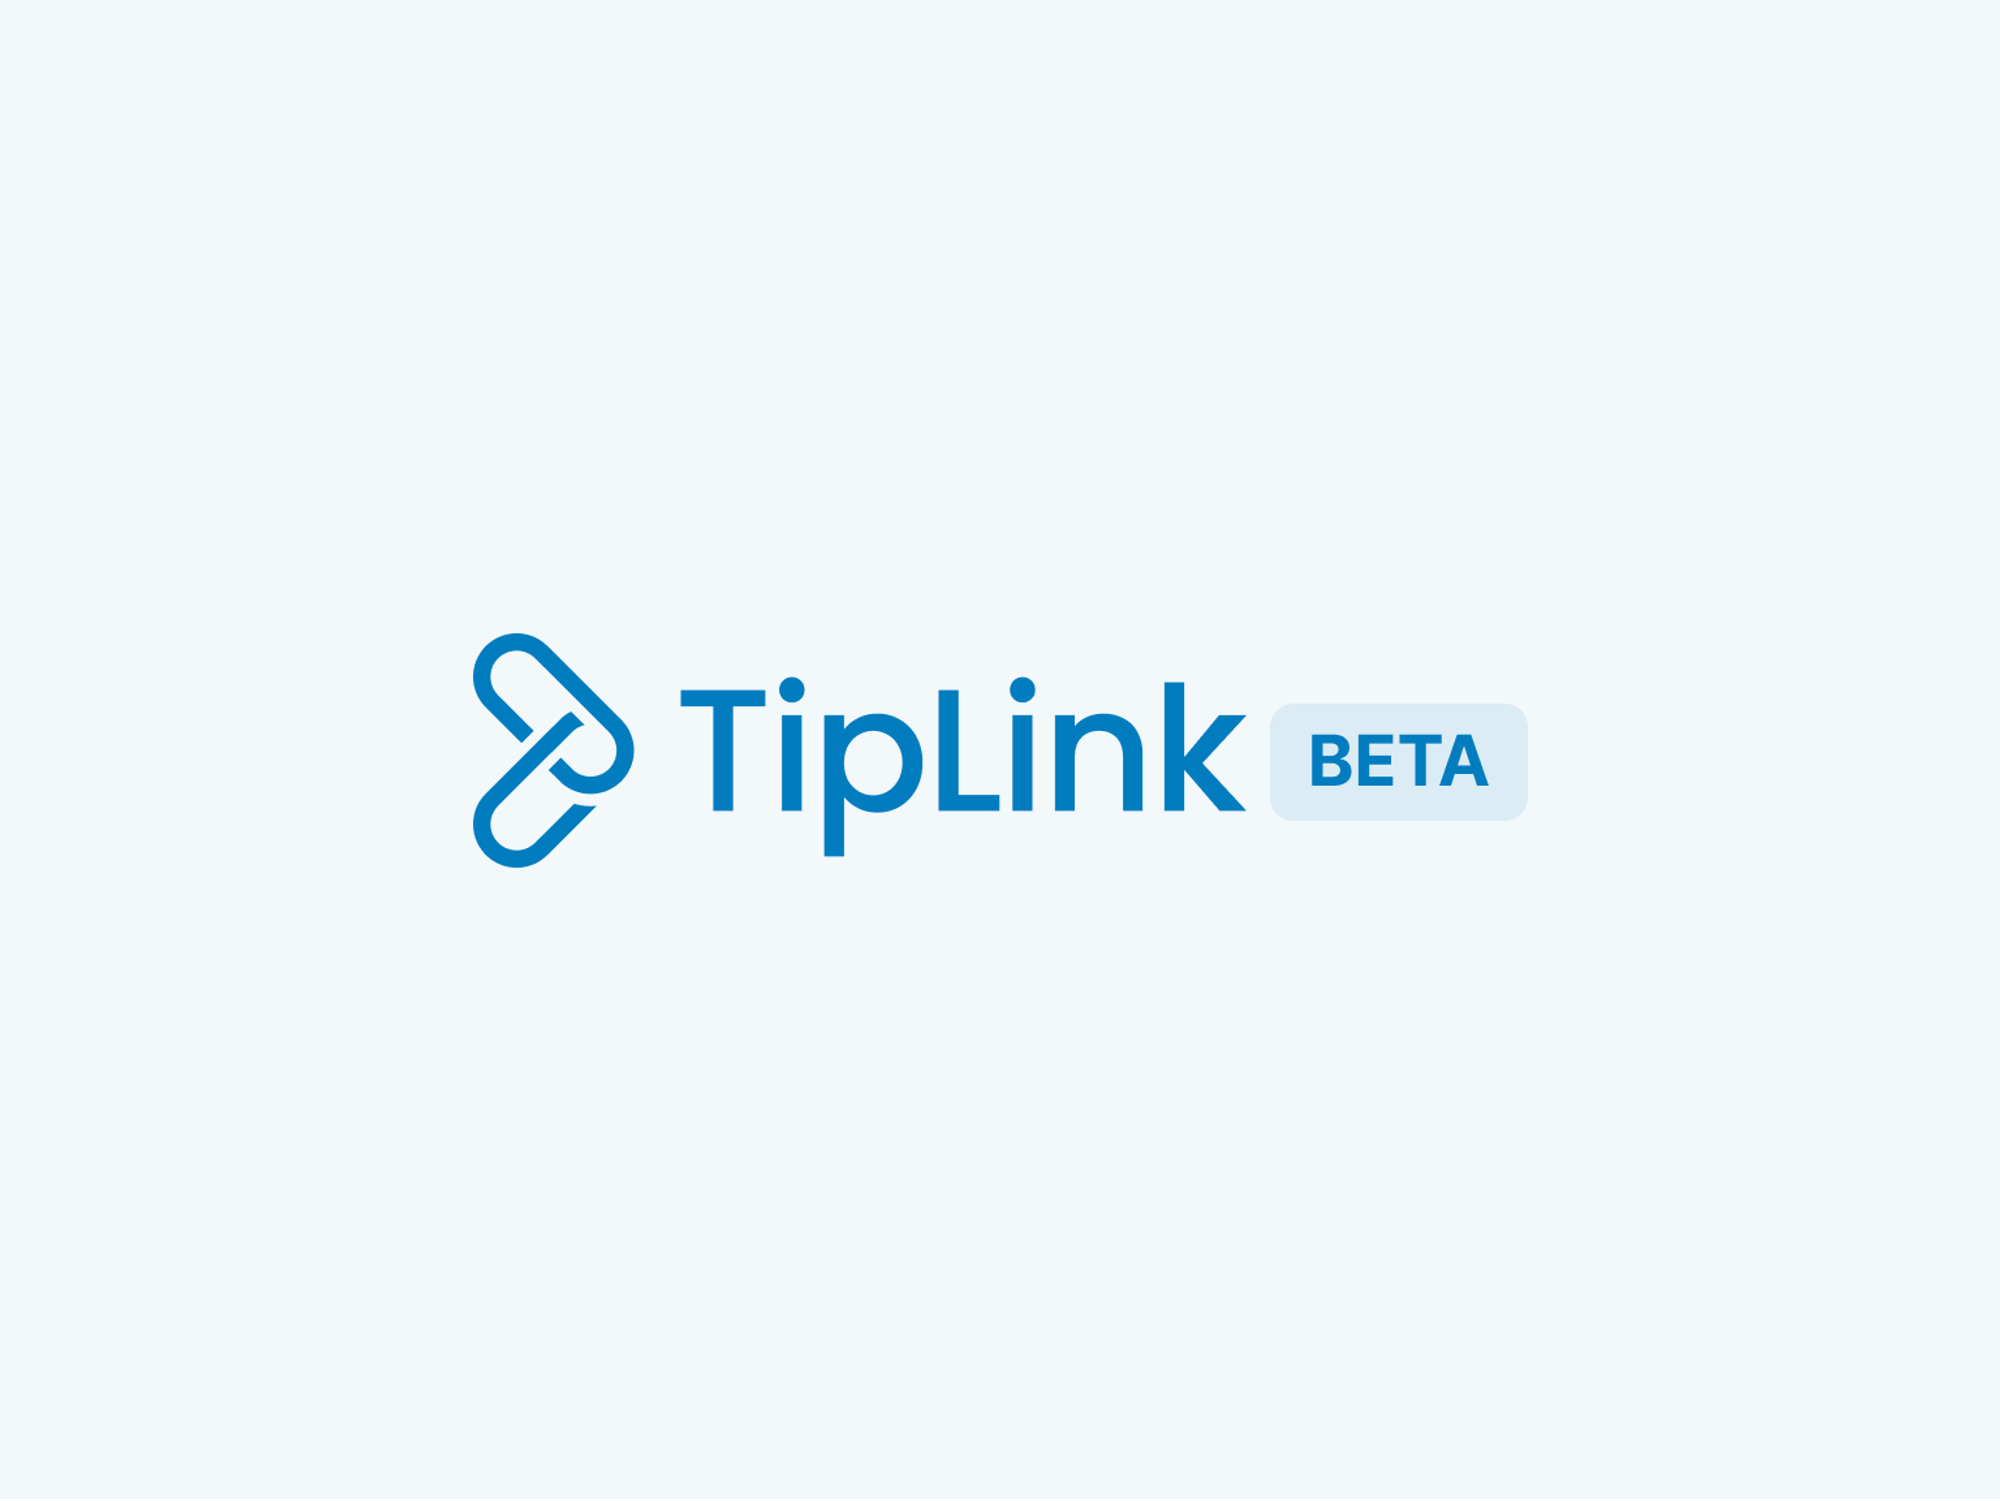 TipLink